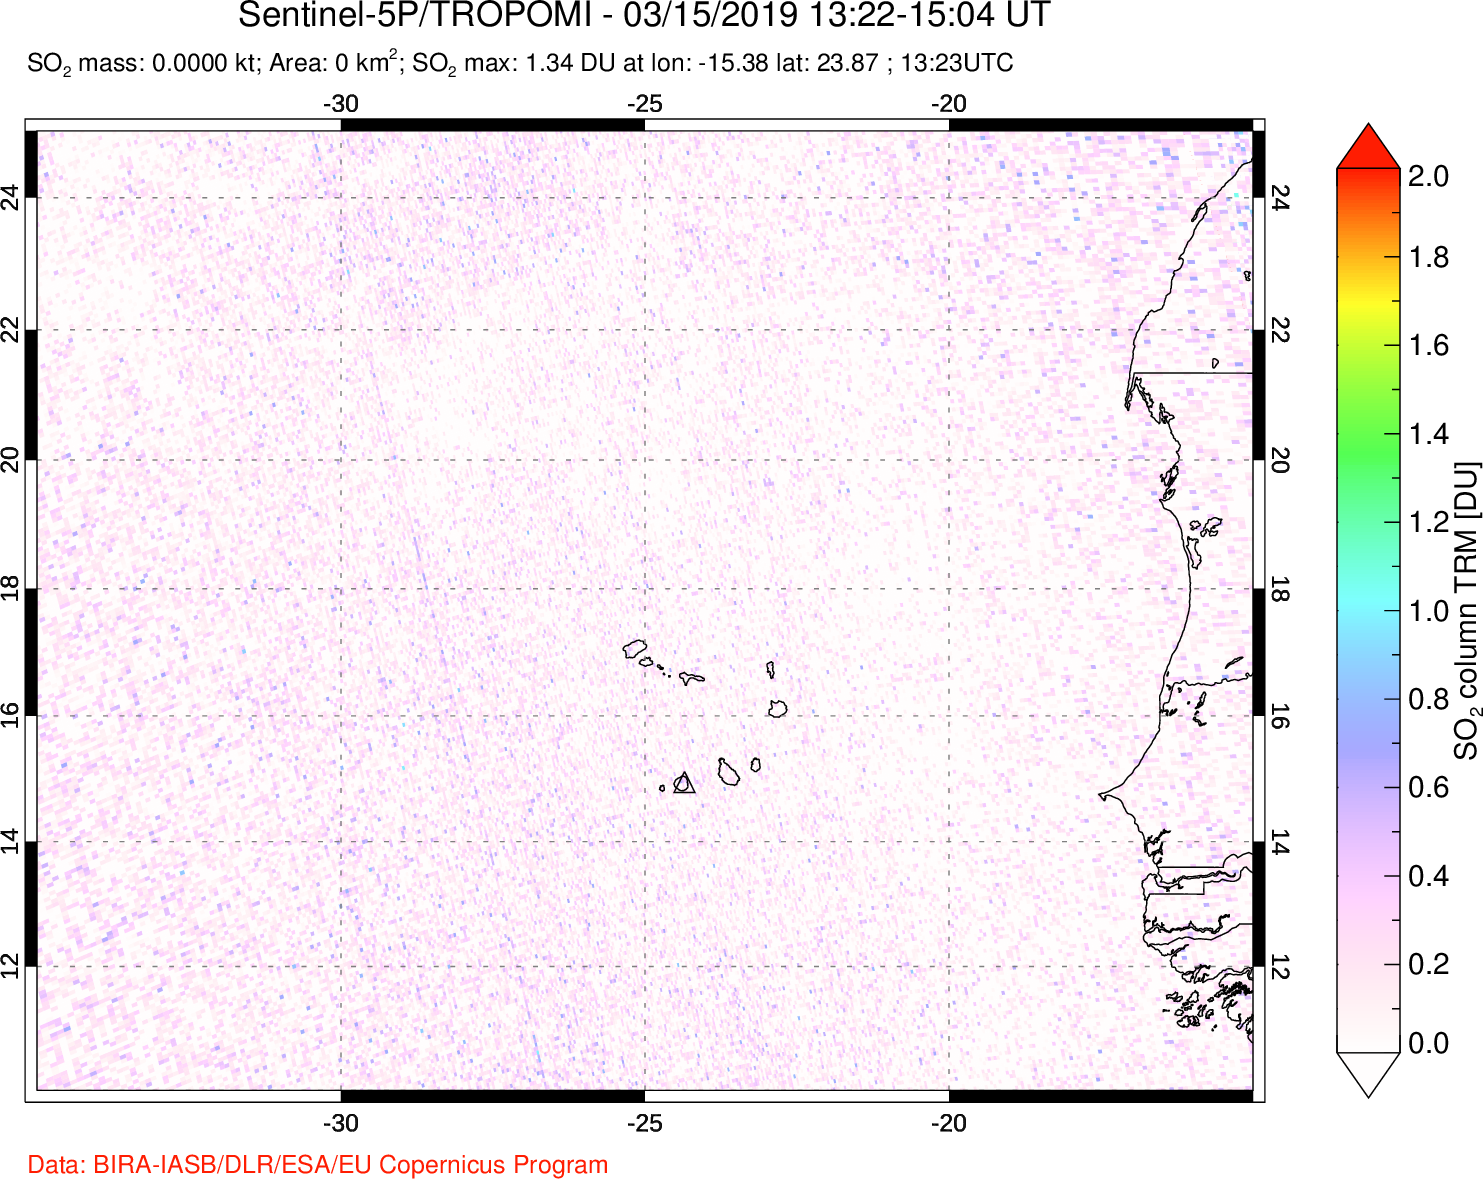 A sulfur dioxide image over Cape Verde Islands on Mar 15, 2019.